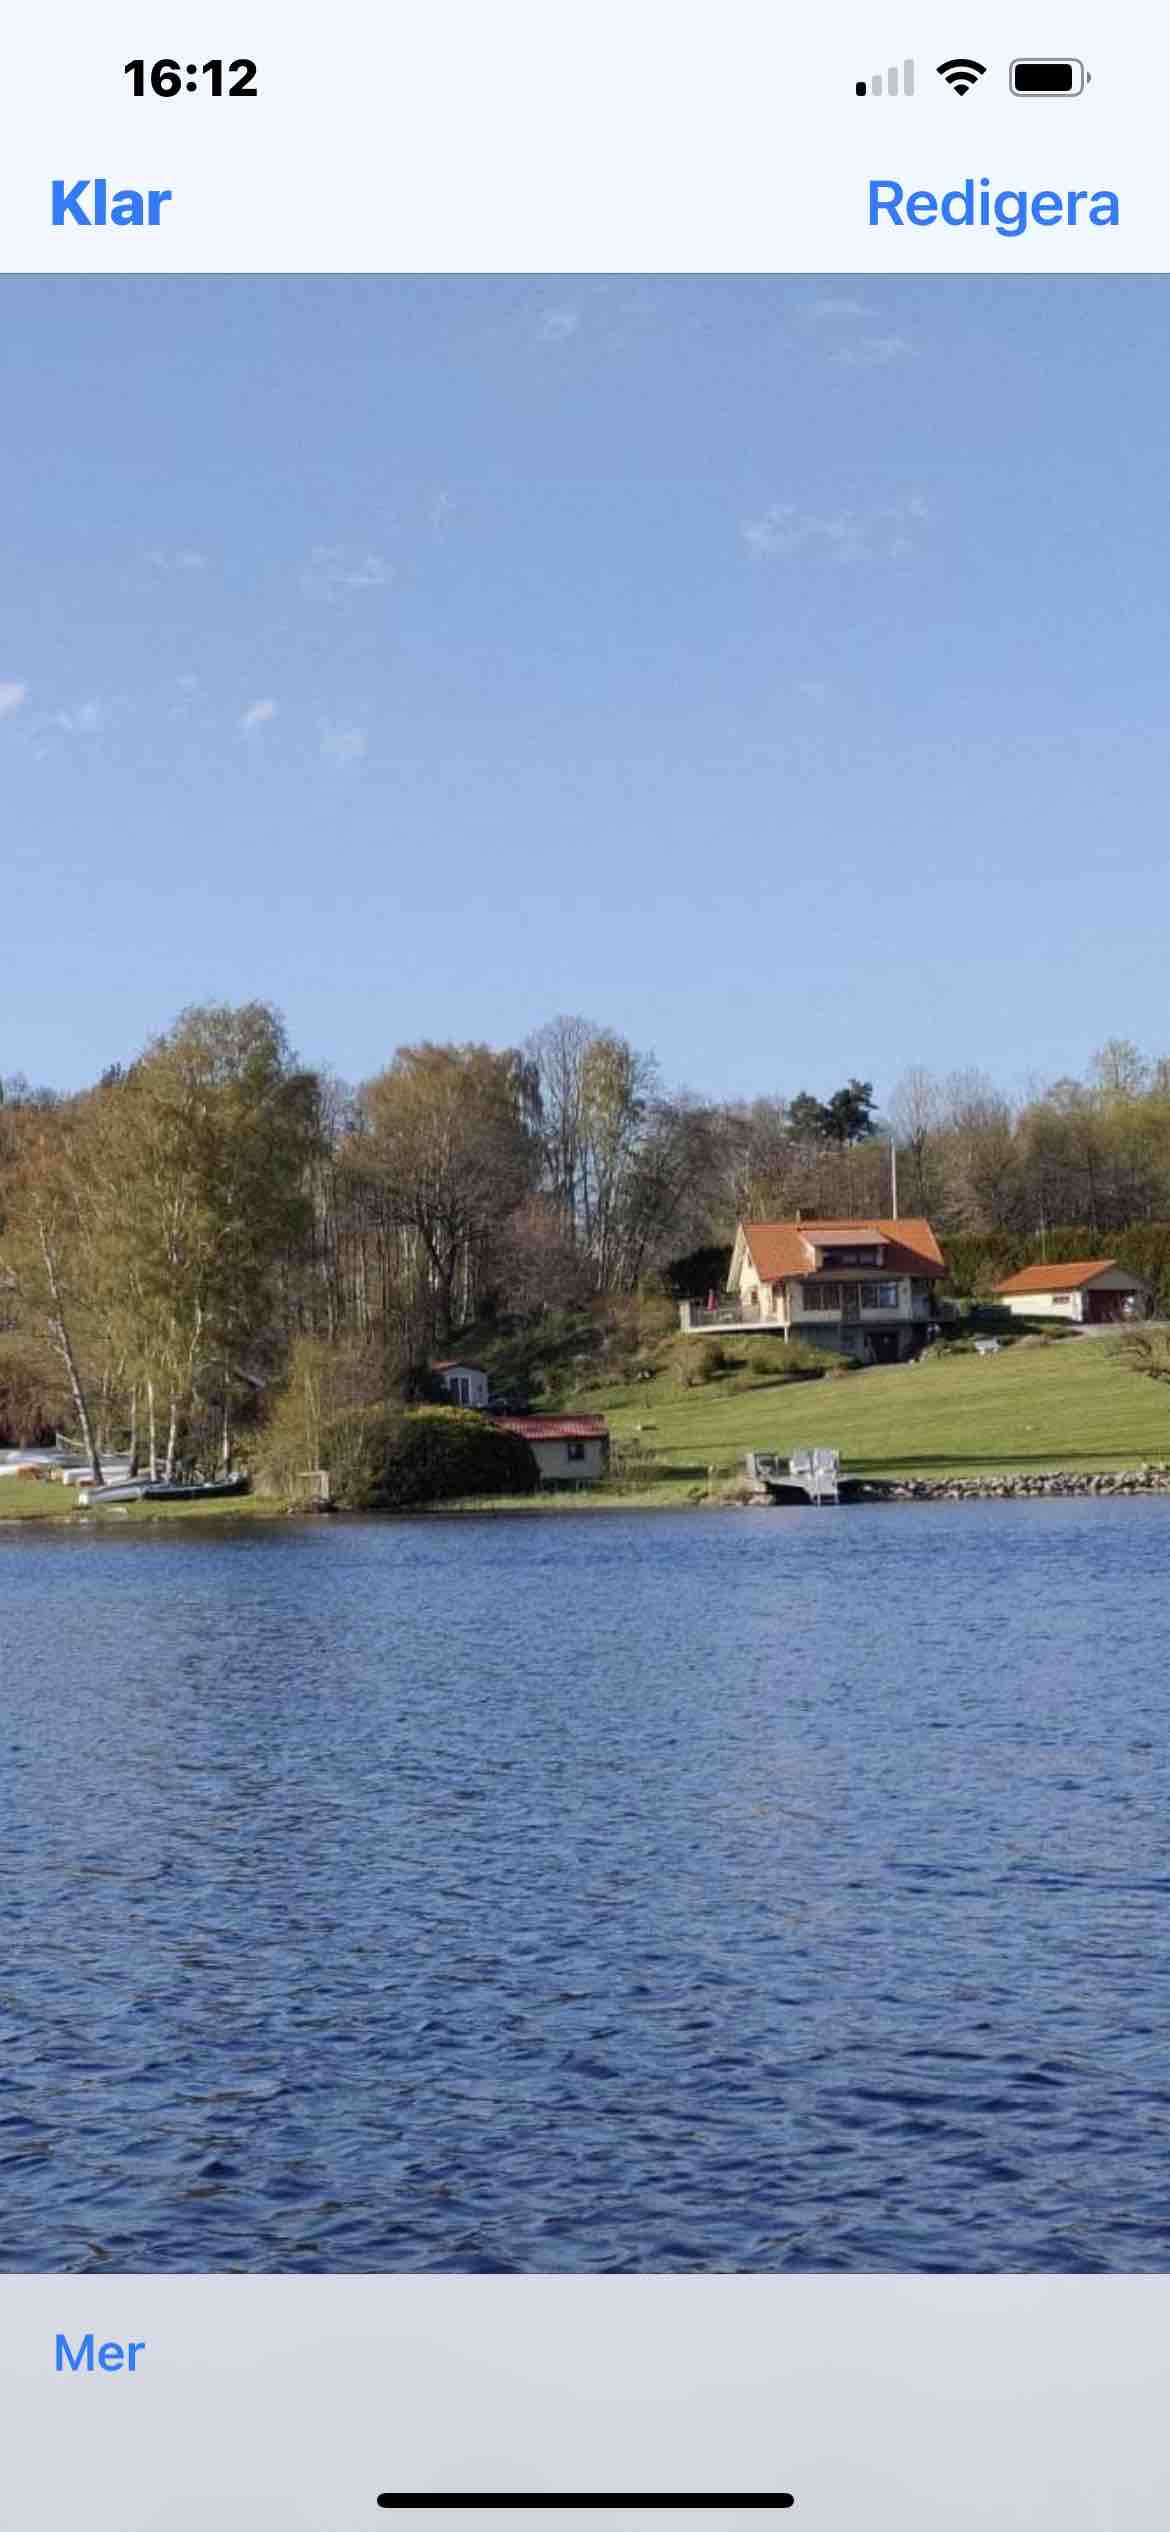 Huset vid sjön med egen brygga och båt.